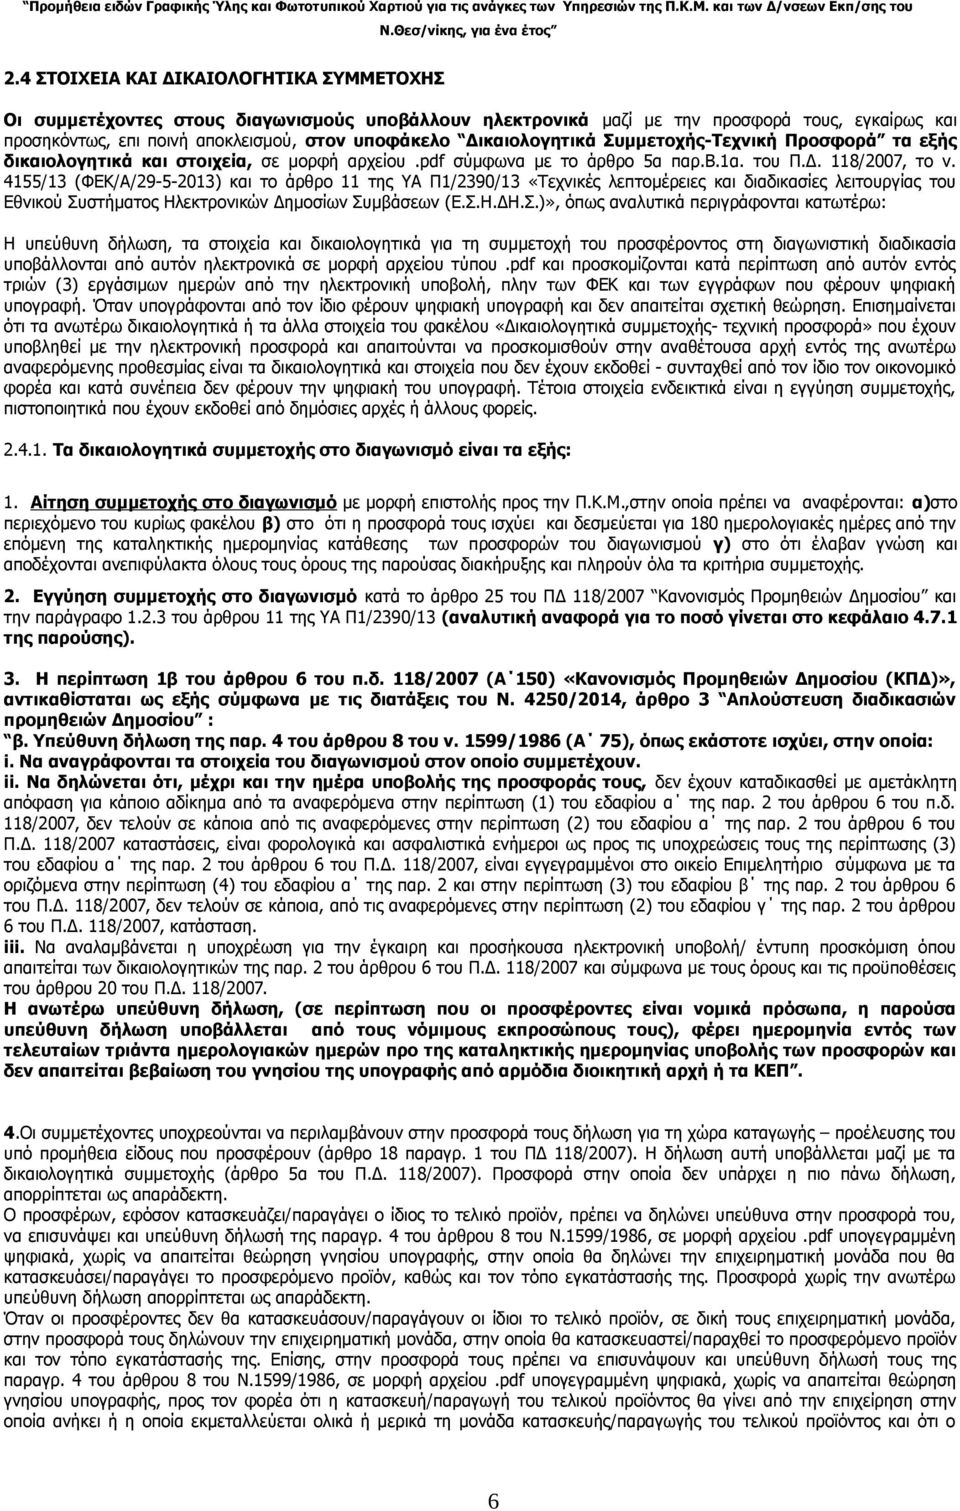 4155/13 (ΦΕΚ/Α/29-5-2013) και το άρθρο 11 της ΥΑ Π1/2390/13 «Τεχνικές λεπτομέρειες και διαδικασίες λειτουργίας του Εθνικού Συ